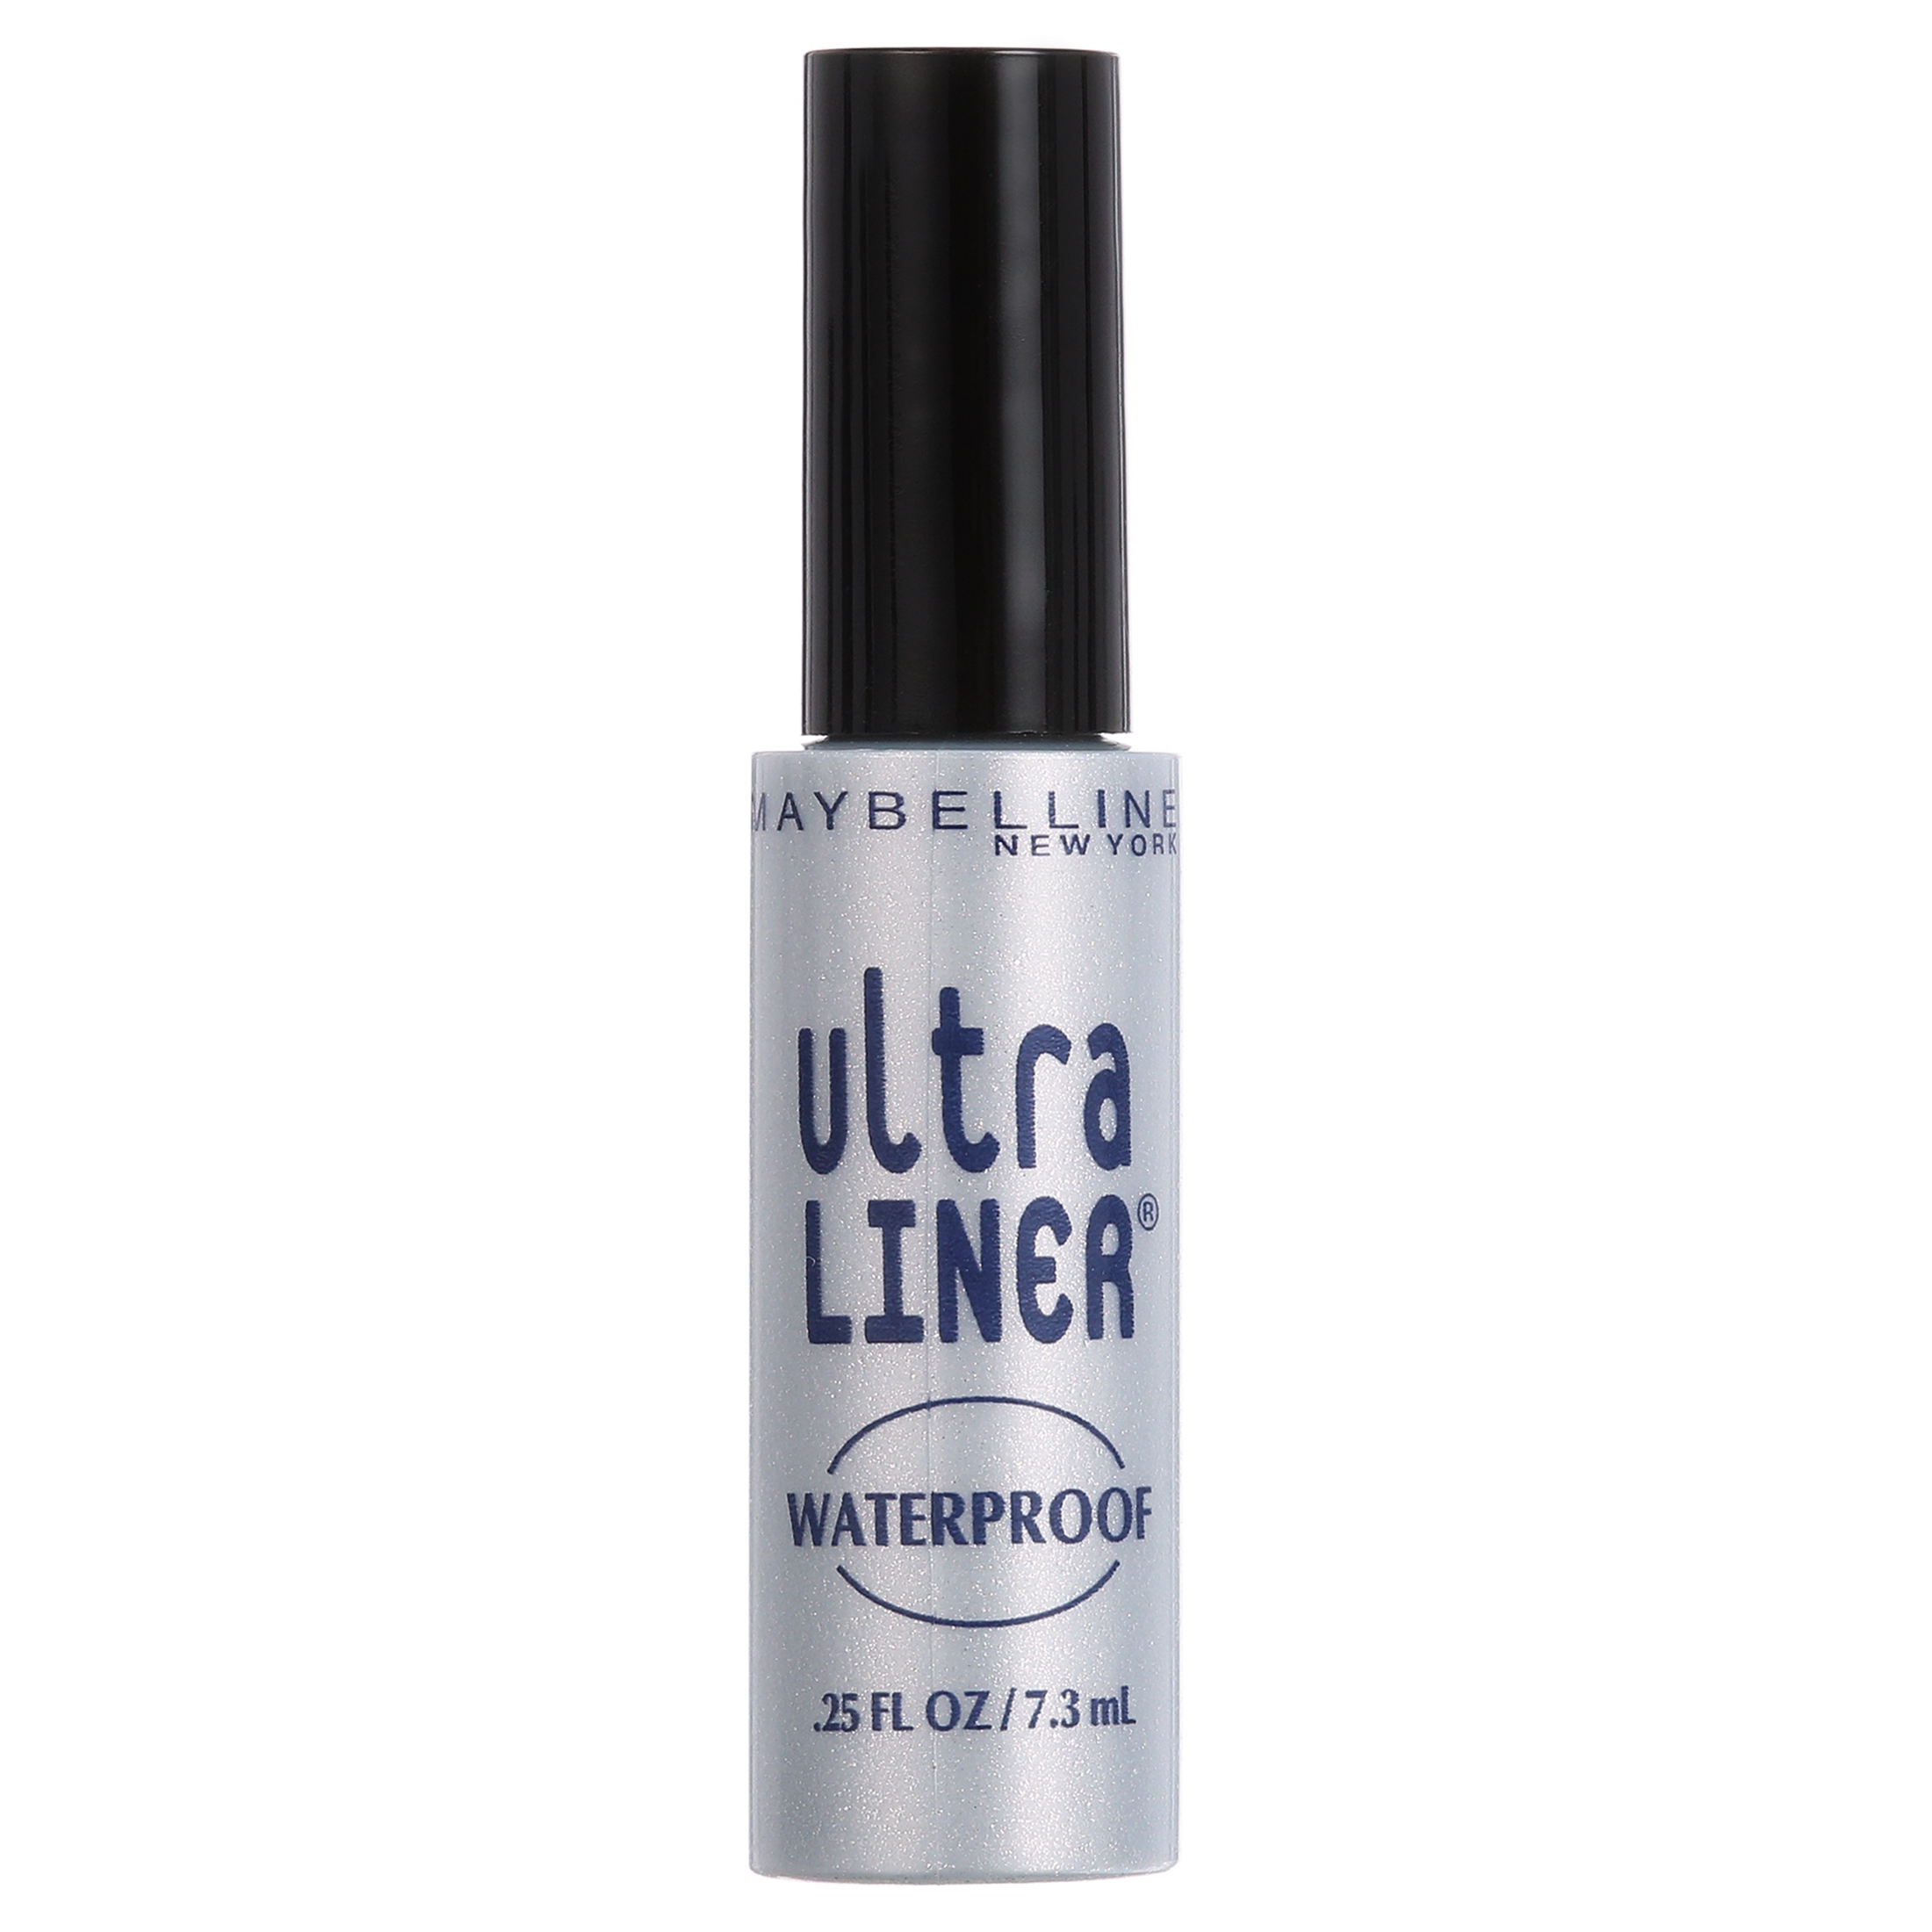 Maybelline Ultra Liner Waterproof Liquid Eyeliner, Black - image 13 of 16